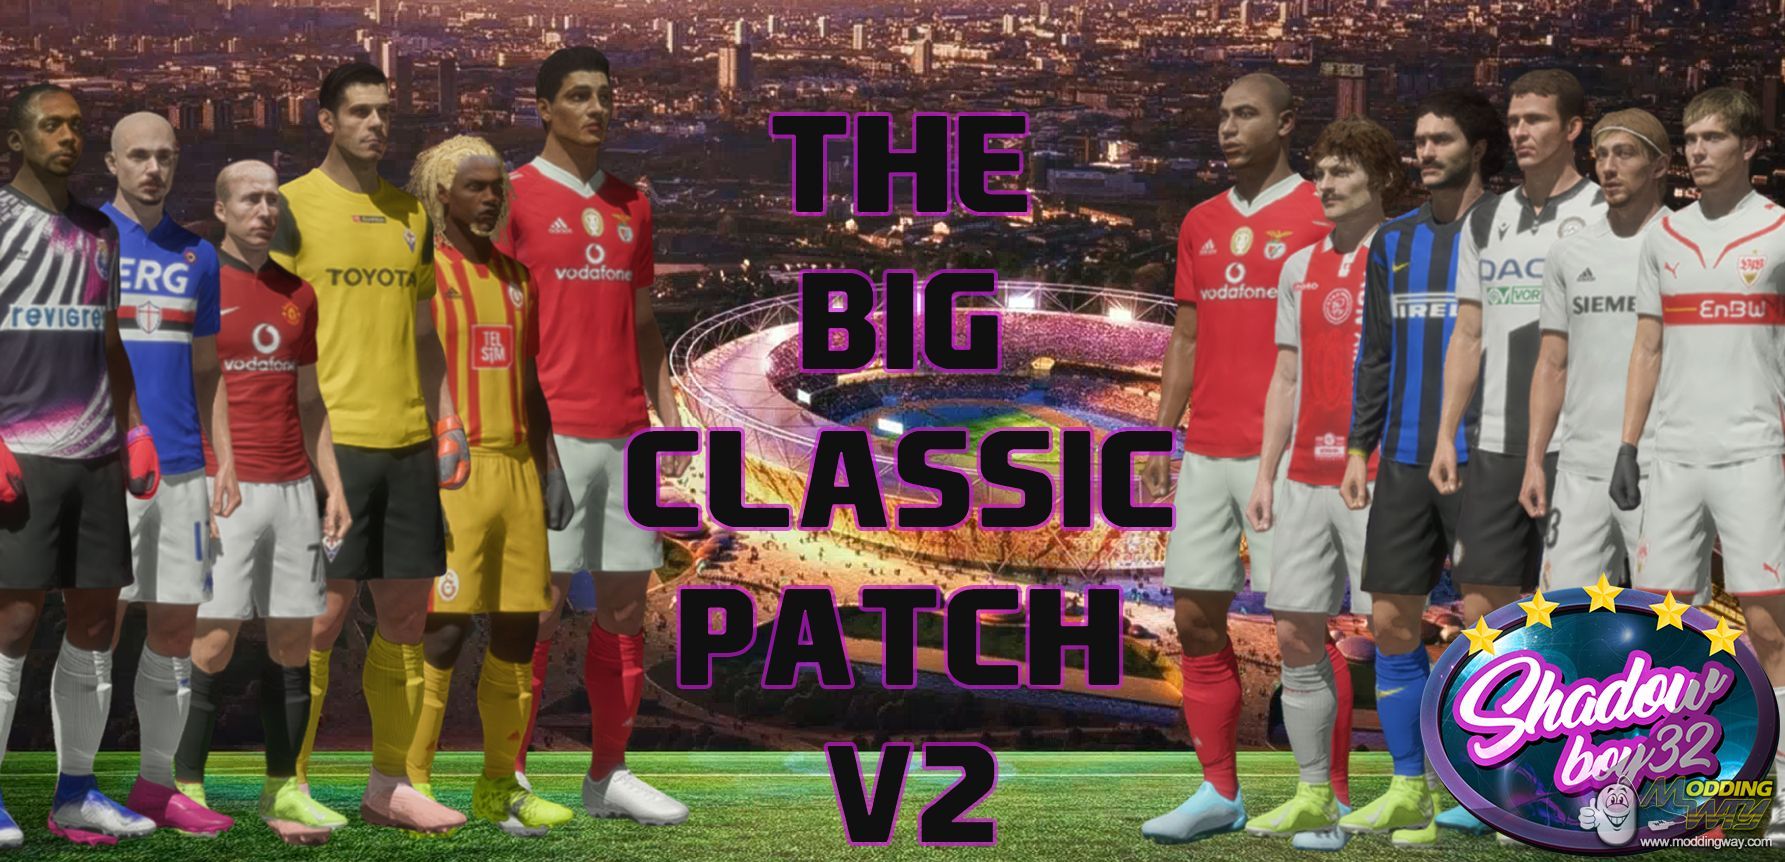 Fifa classic. Classic_Patch_. FIFA 17 Classic Patch. FIFA Classic Match. ФИФА 14 модингвей 16 17.